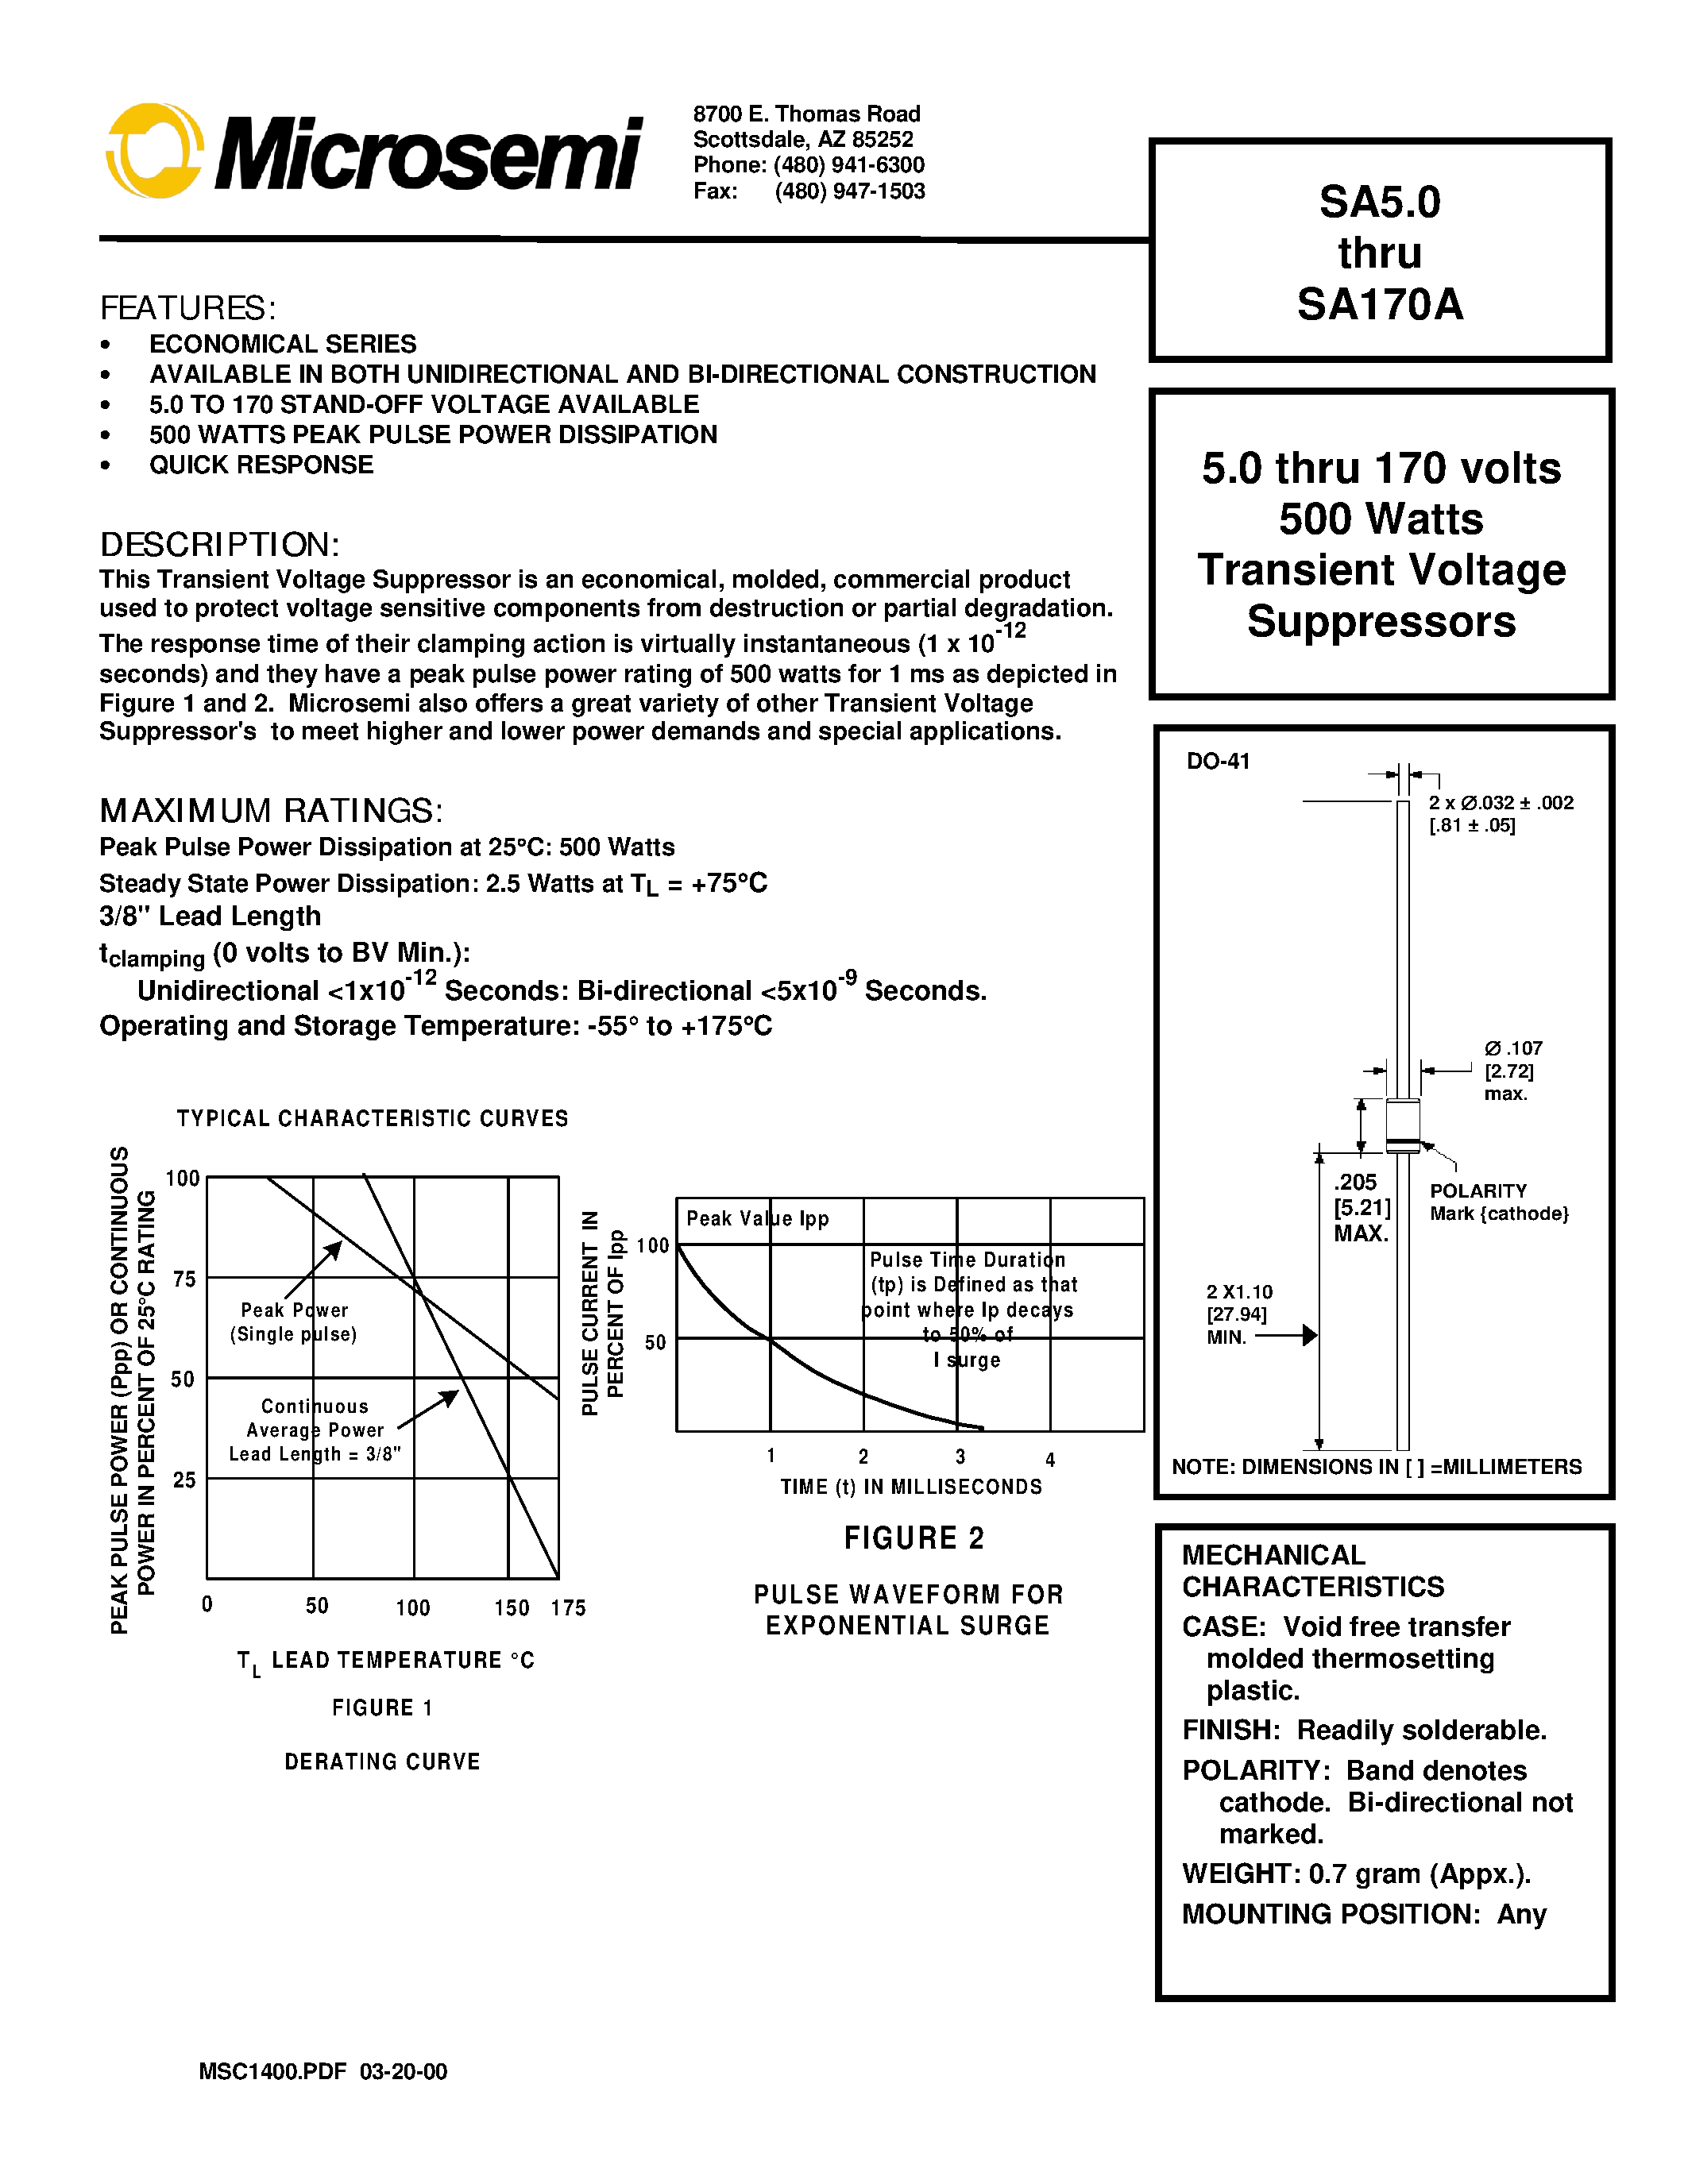 Datasheet SA36 - 5.0 thru 170 volts 500 Watts Transient Voltage Suppressors page 1